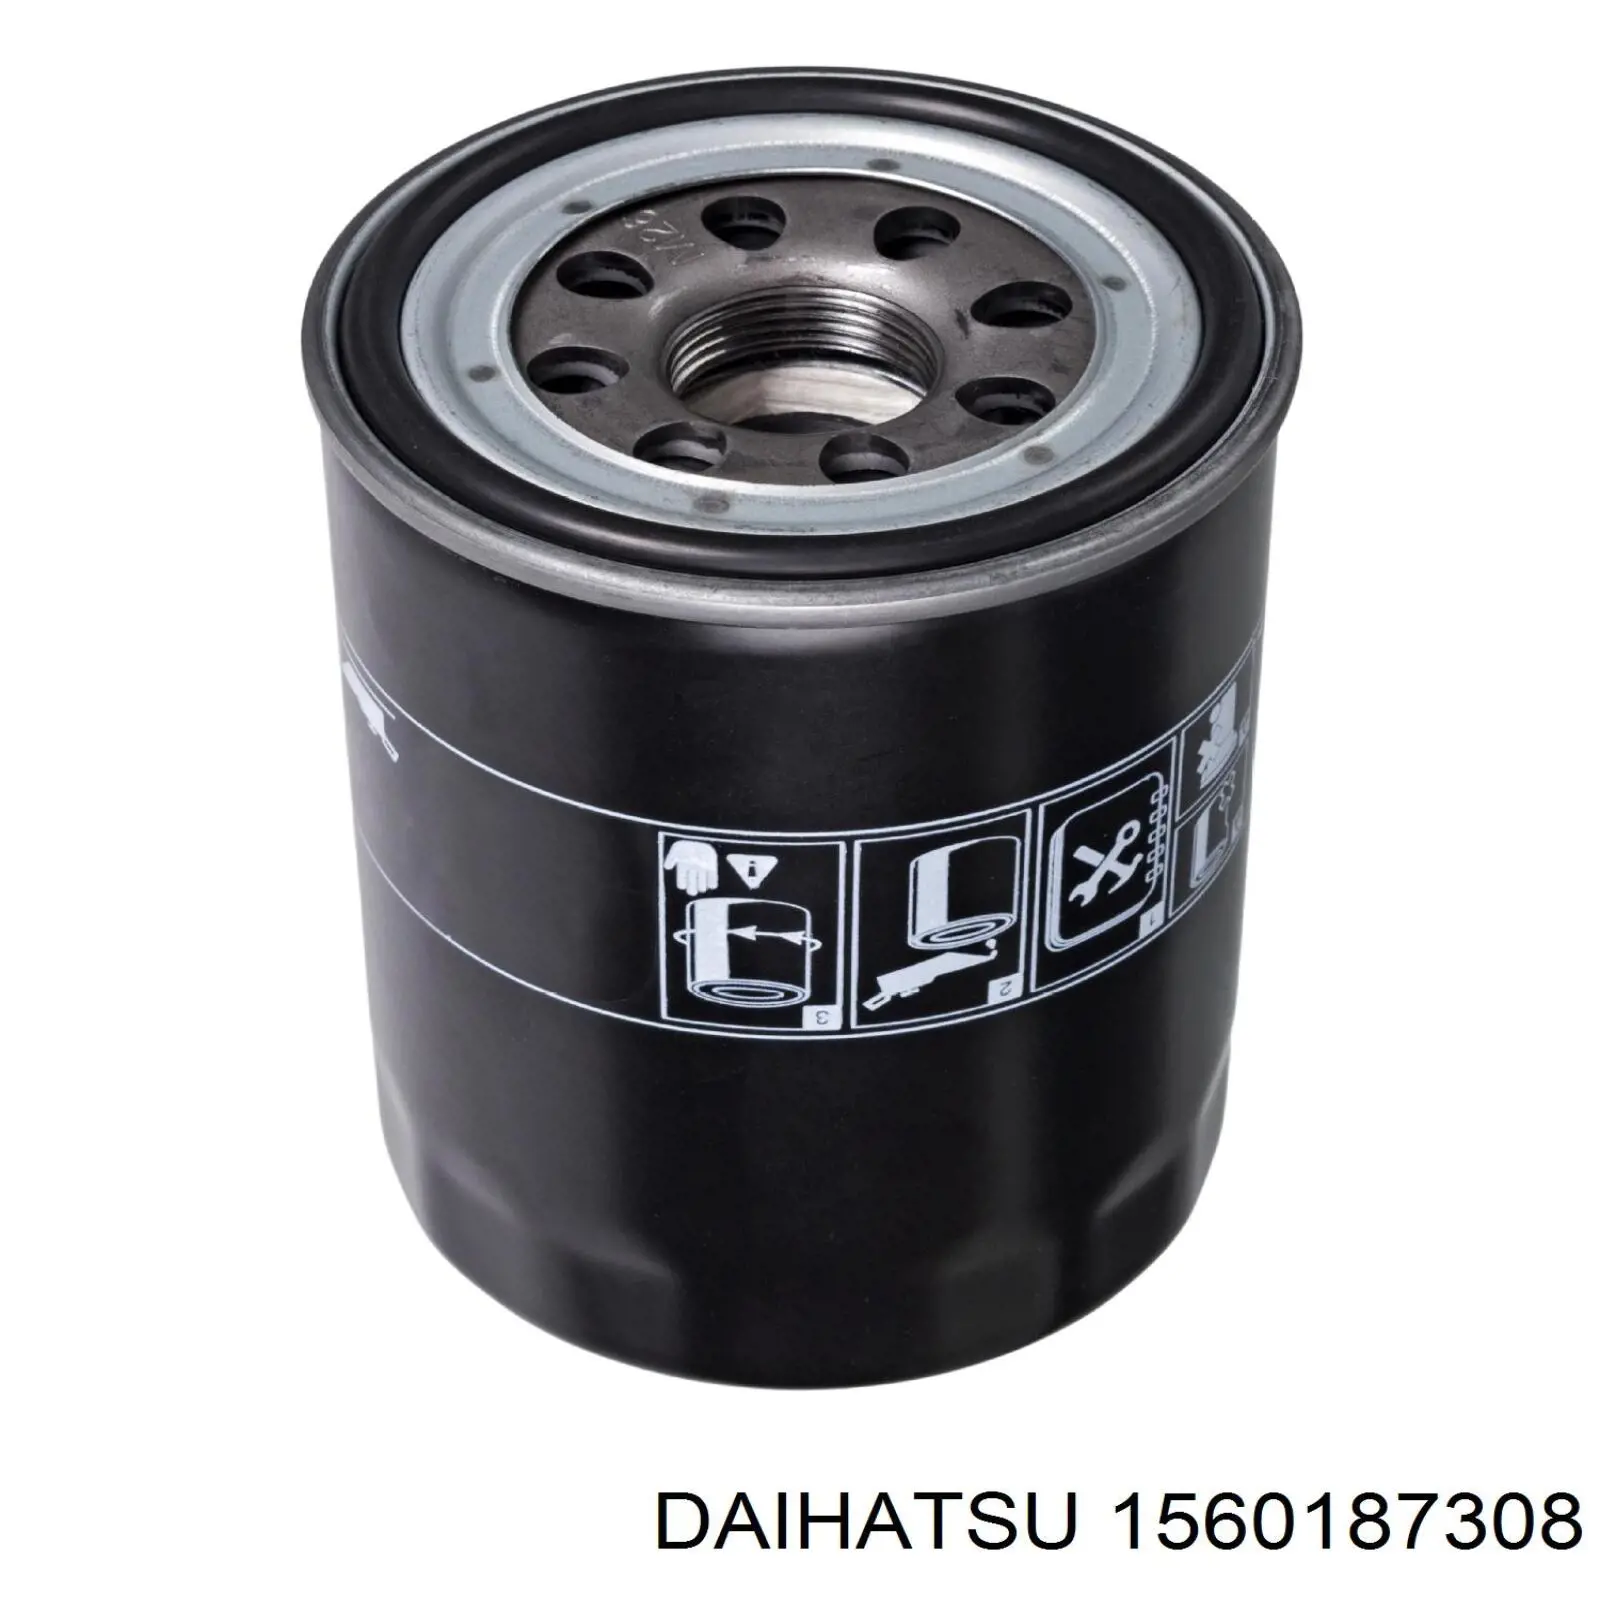 1560187308 Daihatsu filtro de aceite